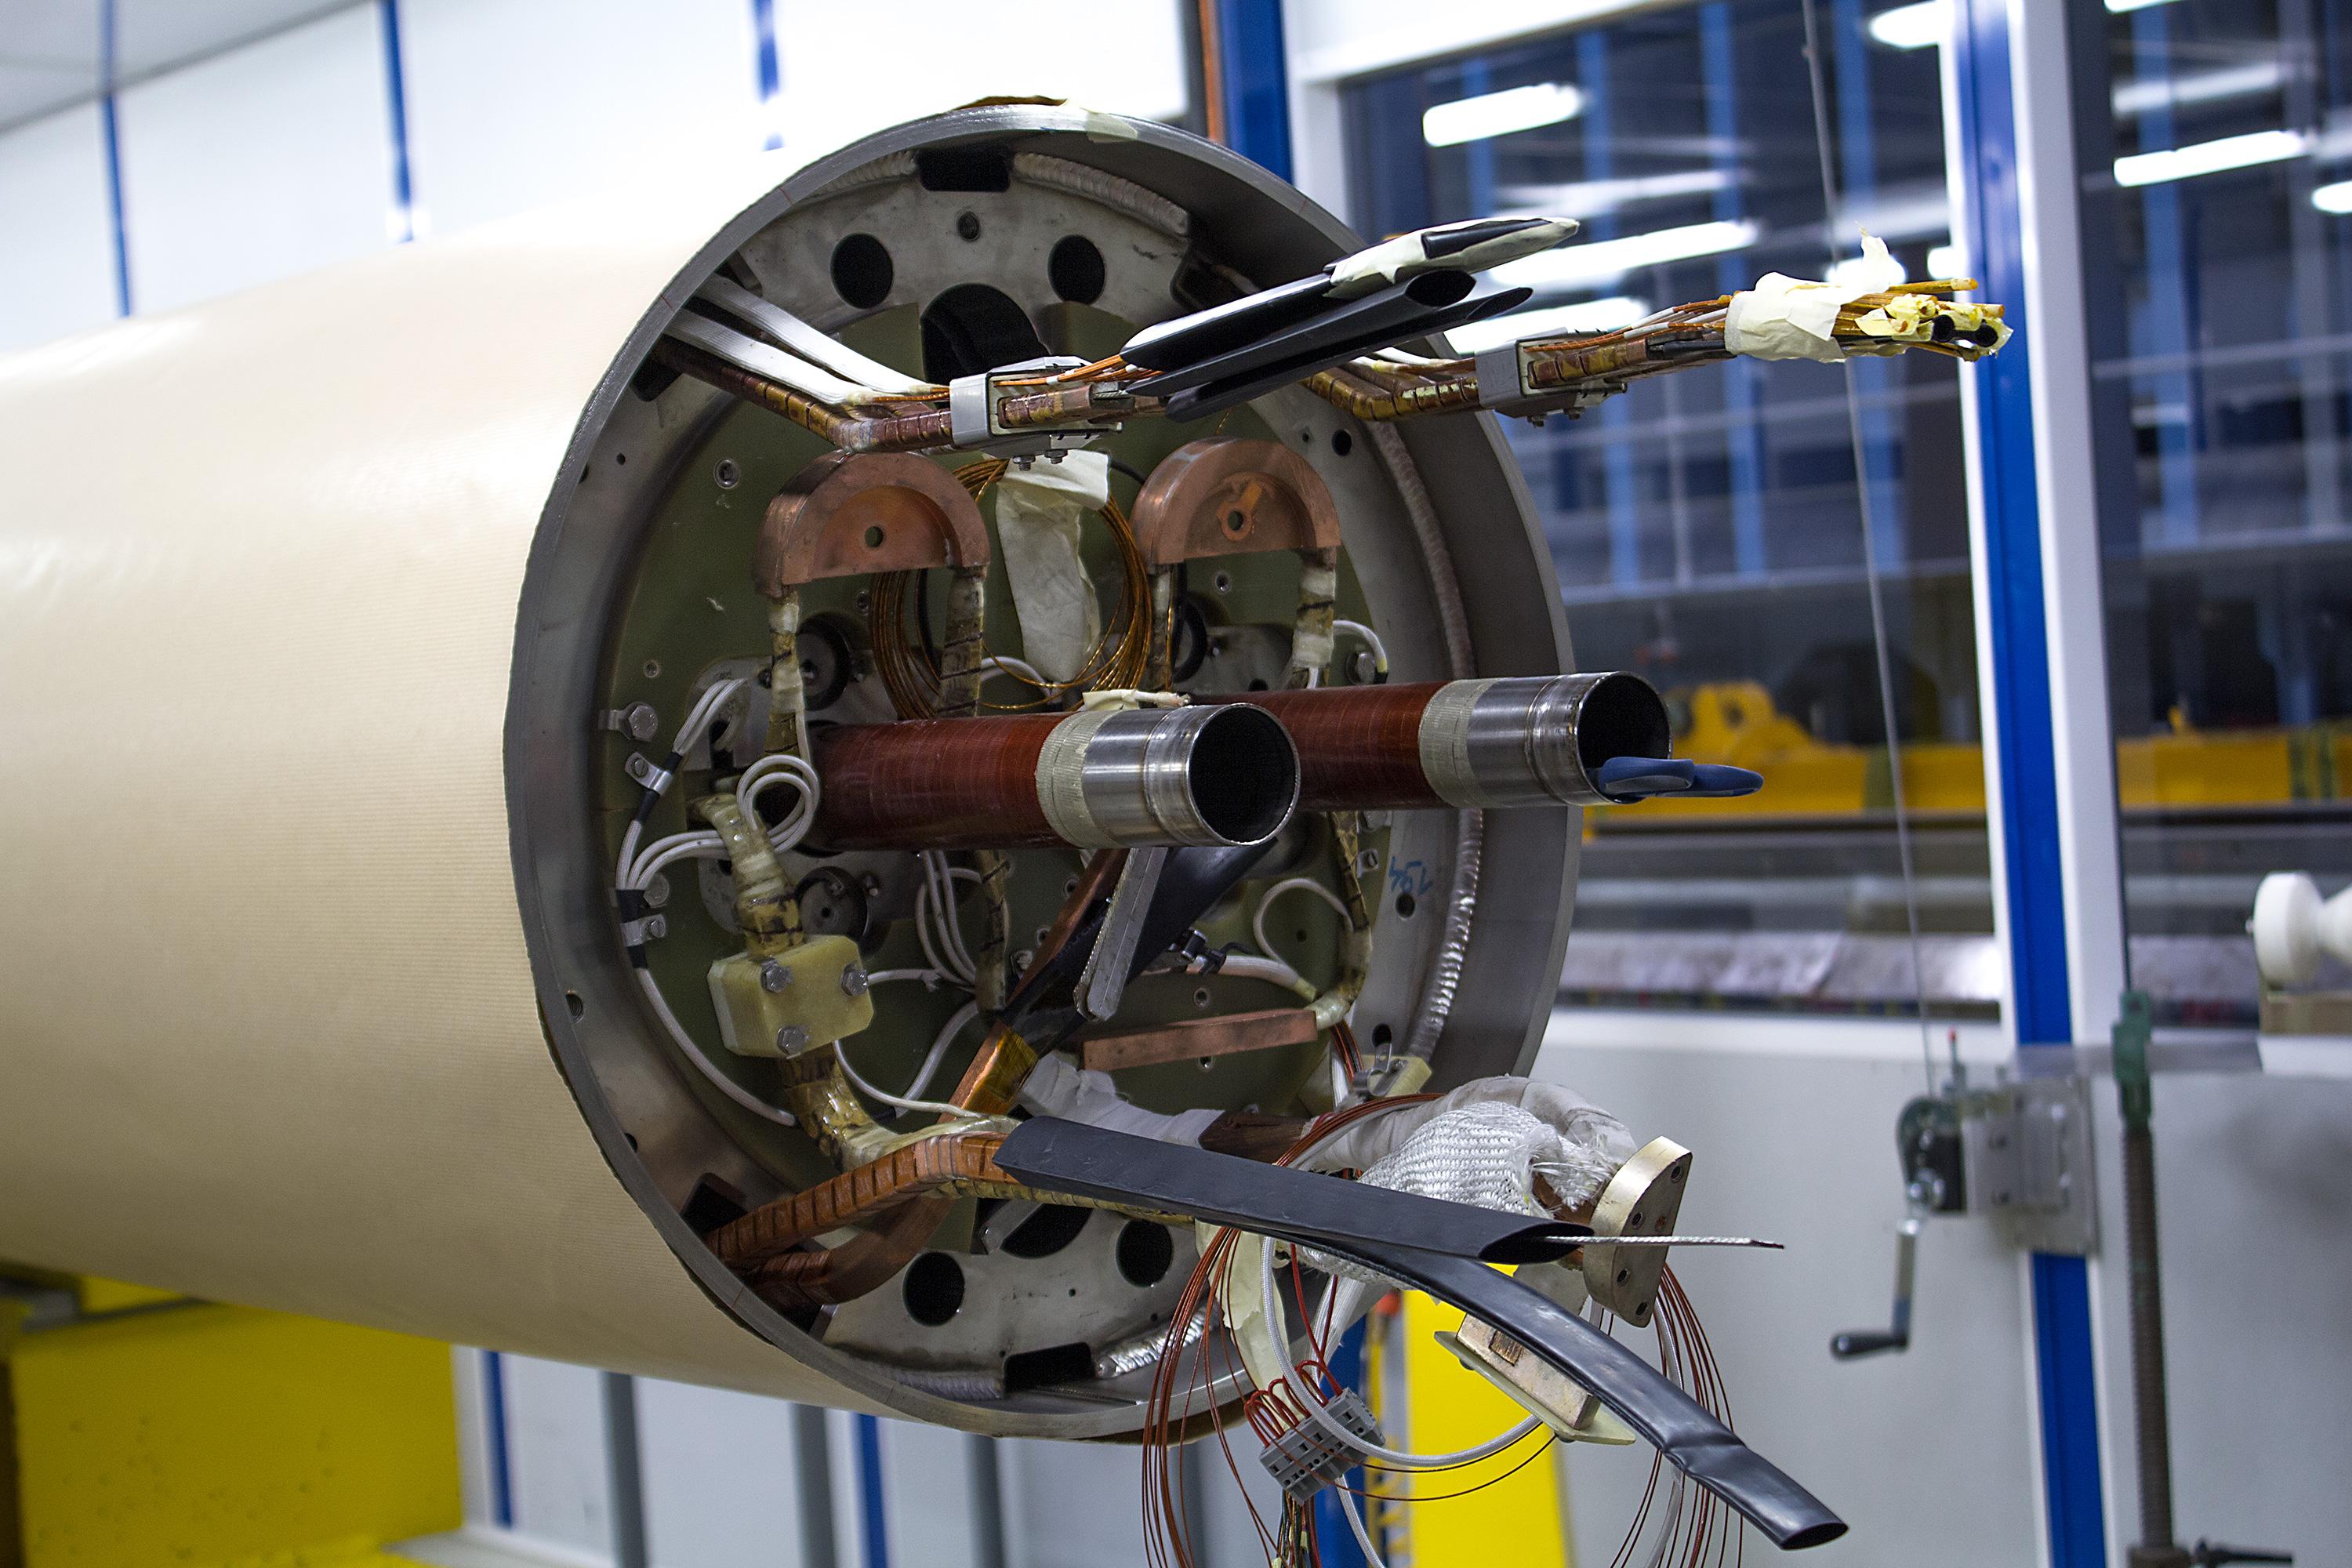 Med alle testene unnagjort, blir de midlertidlige pluggene fjernet. Hver magnet er 50 meter lang, og samlet sett skal rundt 1600 av dem skrus sammen i LHC-ringen, 100 – 150 meter under bakken. Det er trangt der nede, så mye av arbeidet med å klargjøre alle kablene og rørene som skal skjøtes, skjer over bakkenivå. Foto: Varg Aamo, Hardware.no